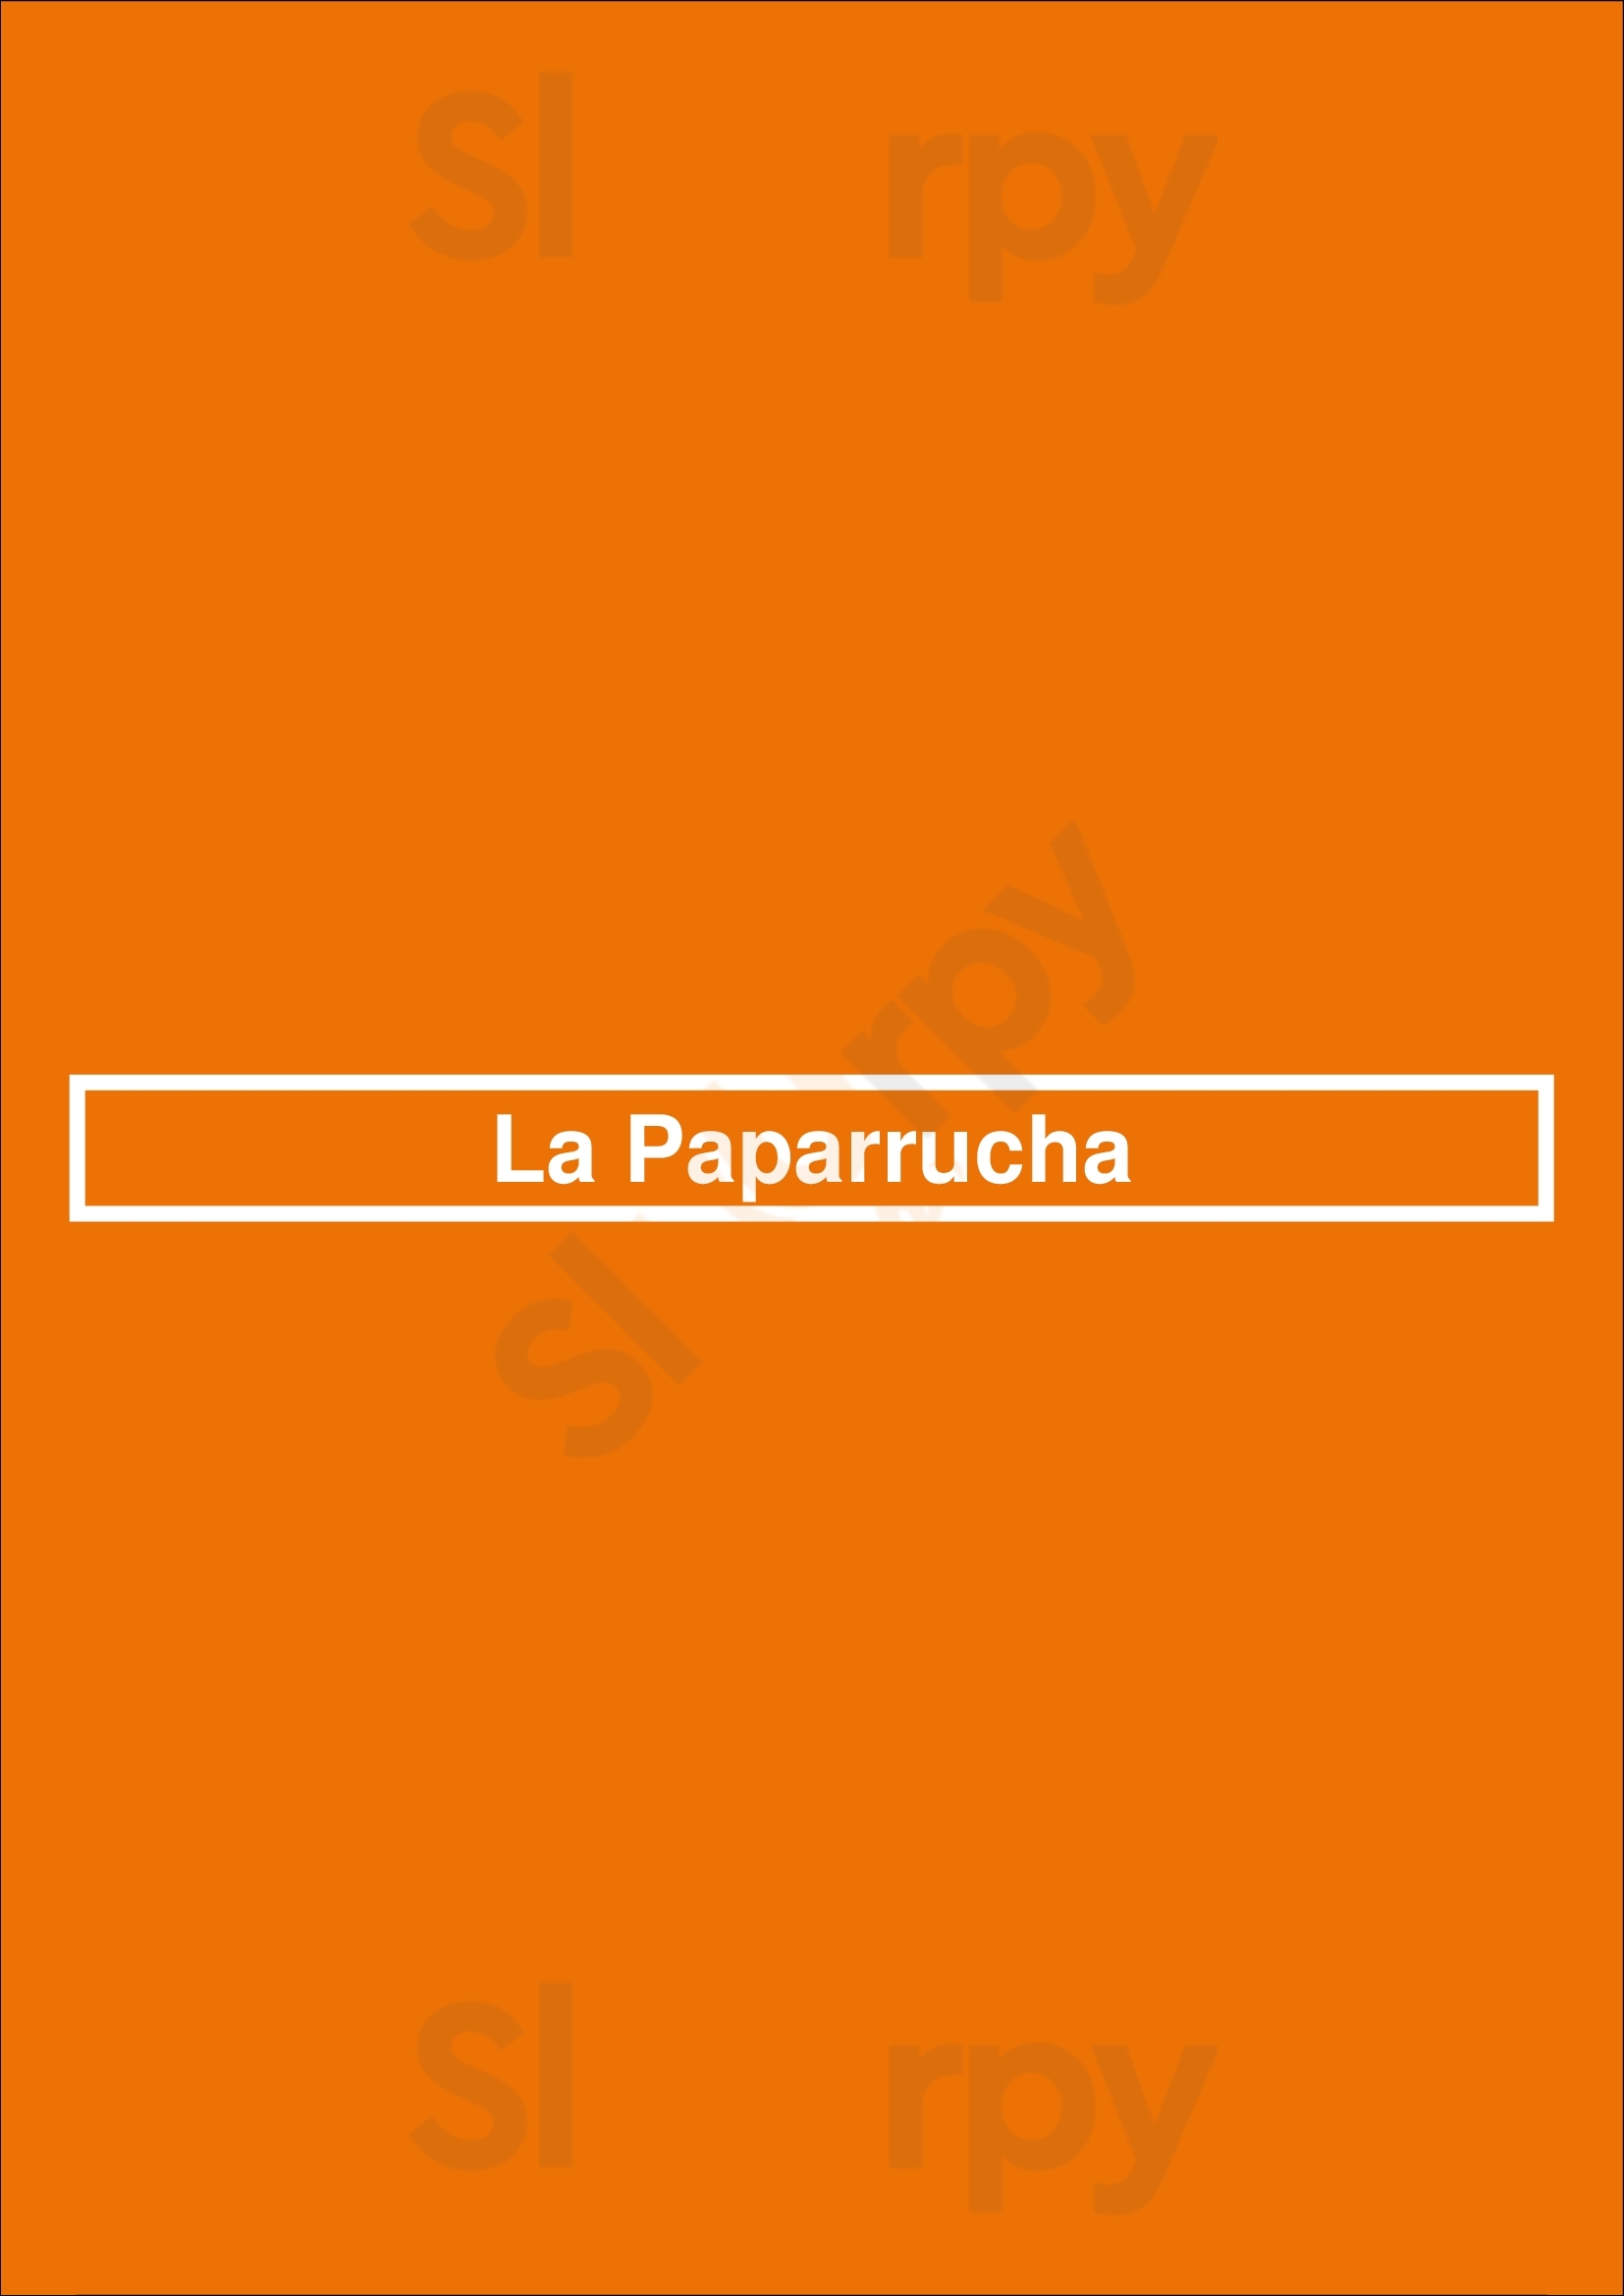 La Paparrucha Lisboa Menu - 1